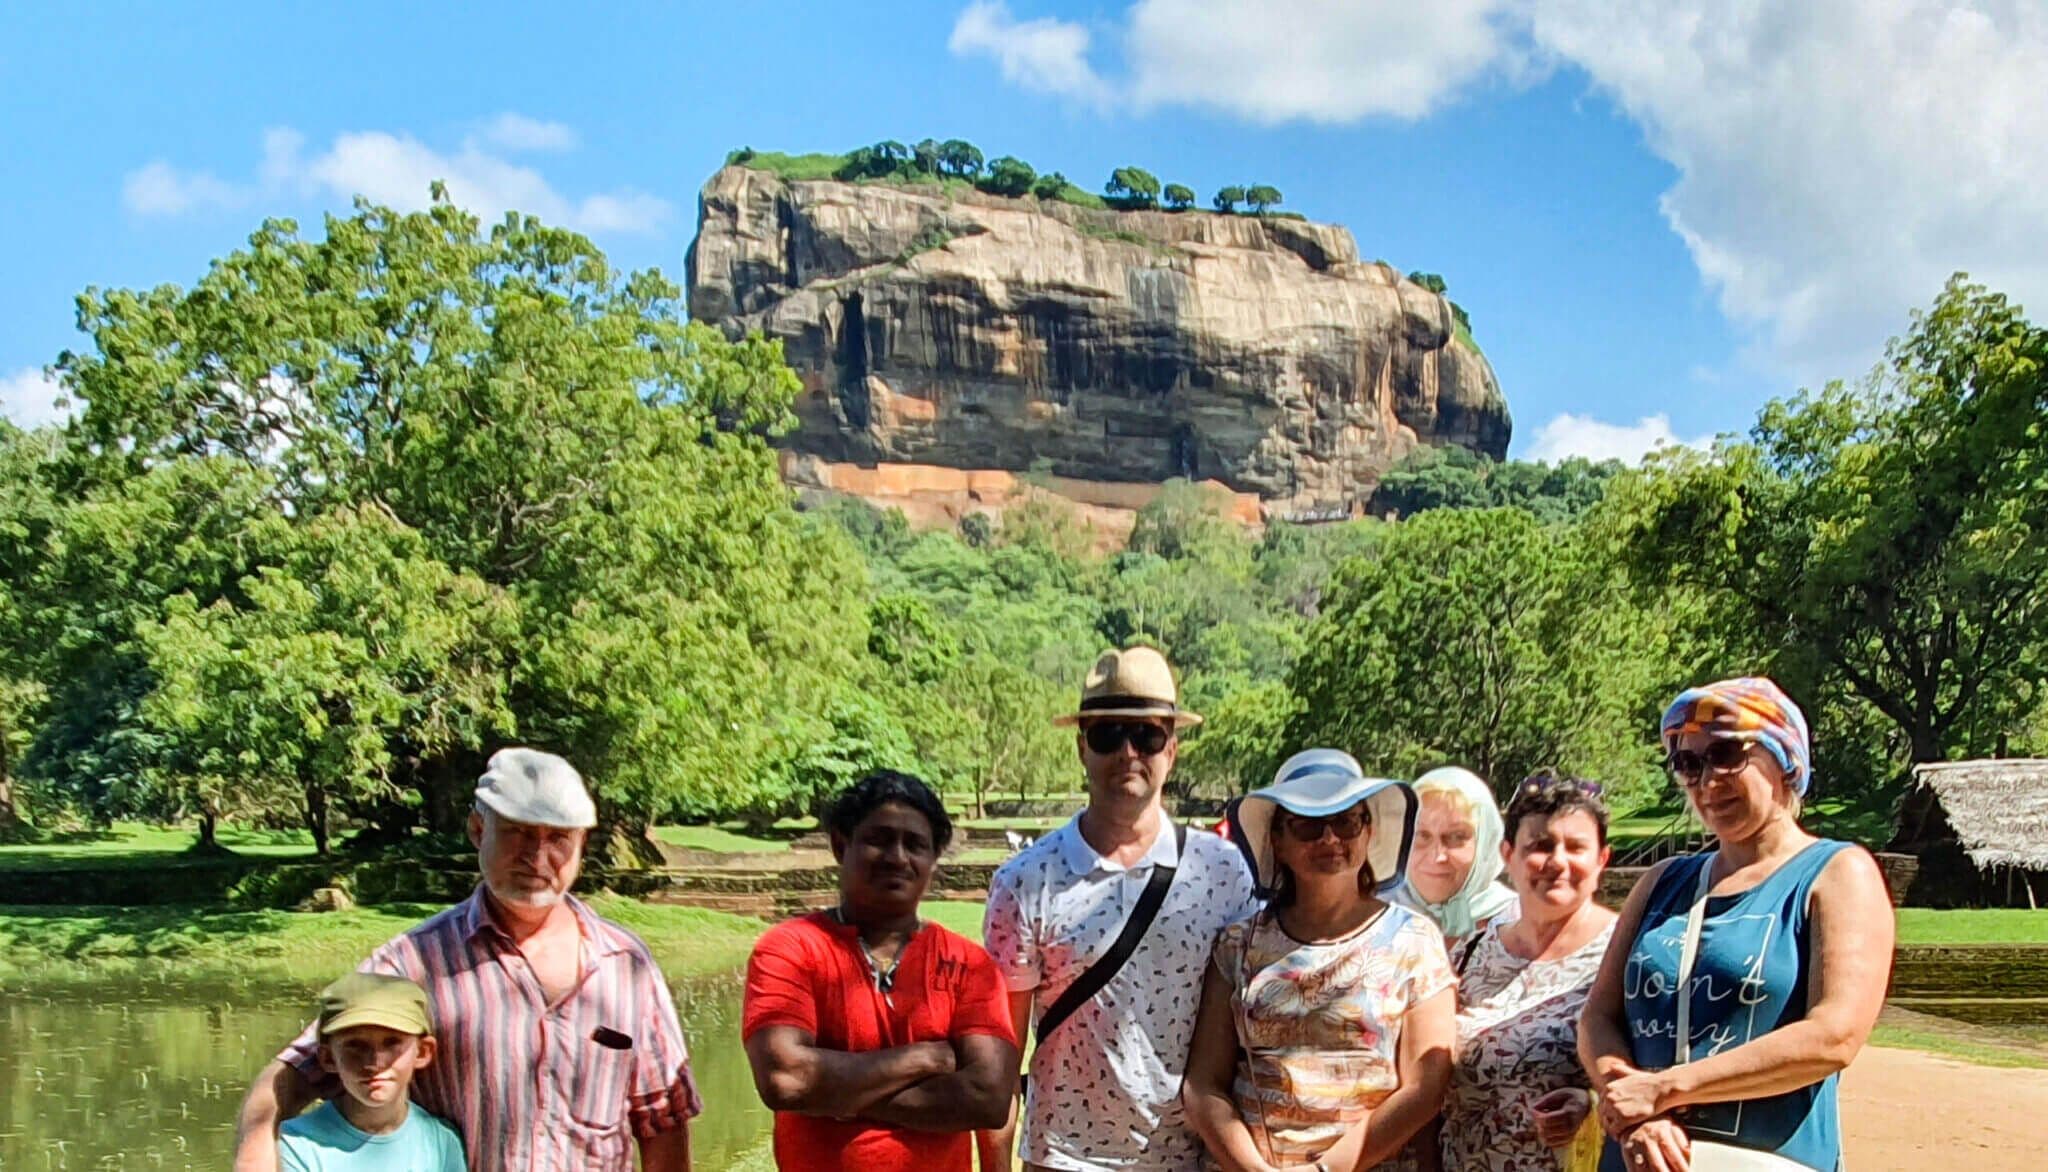 السائحون يزورون صخرة أسد سيجيريا في سريلانكا